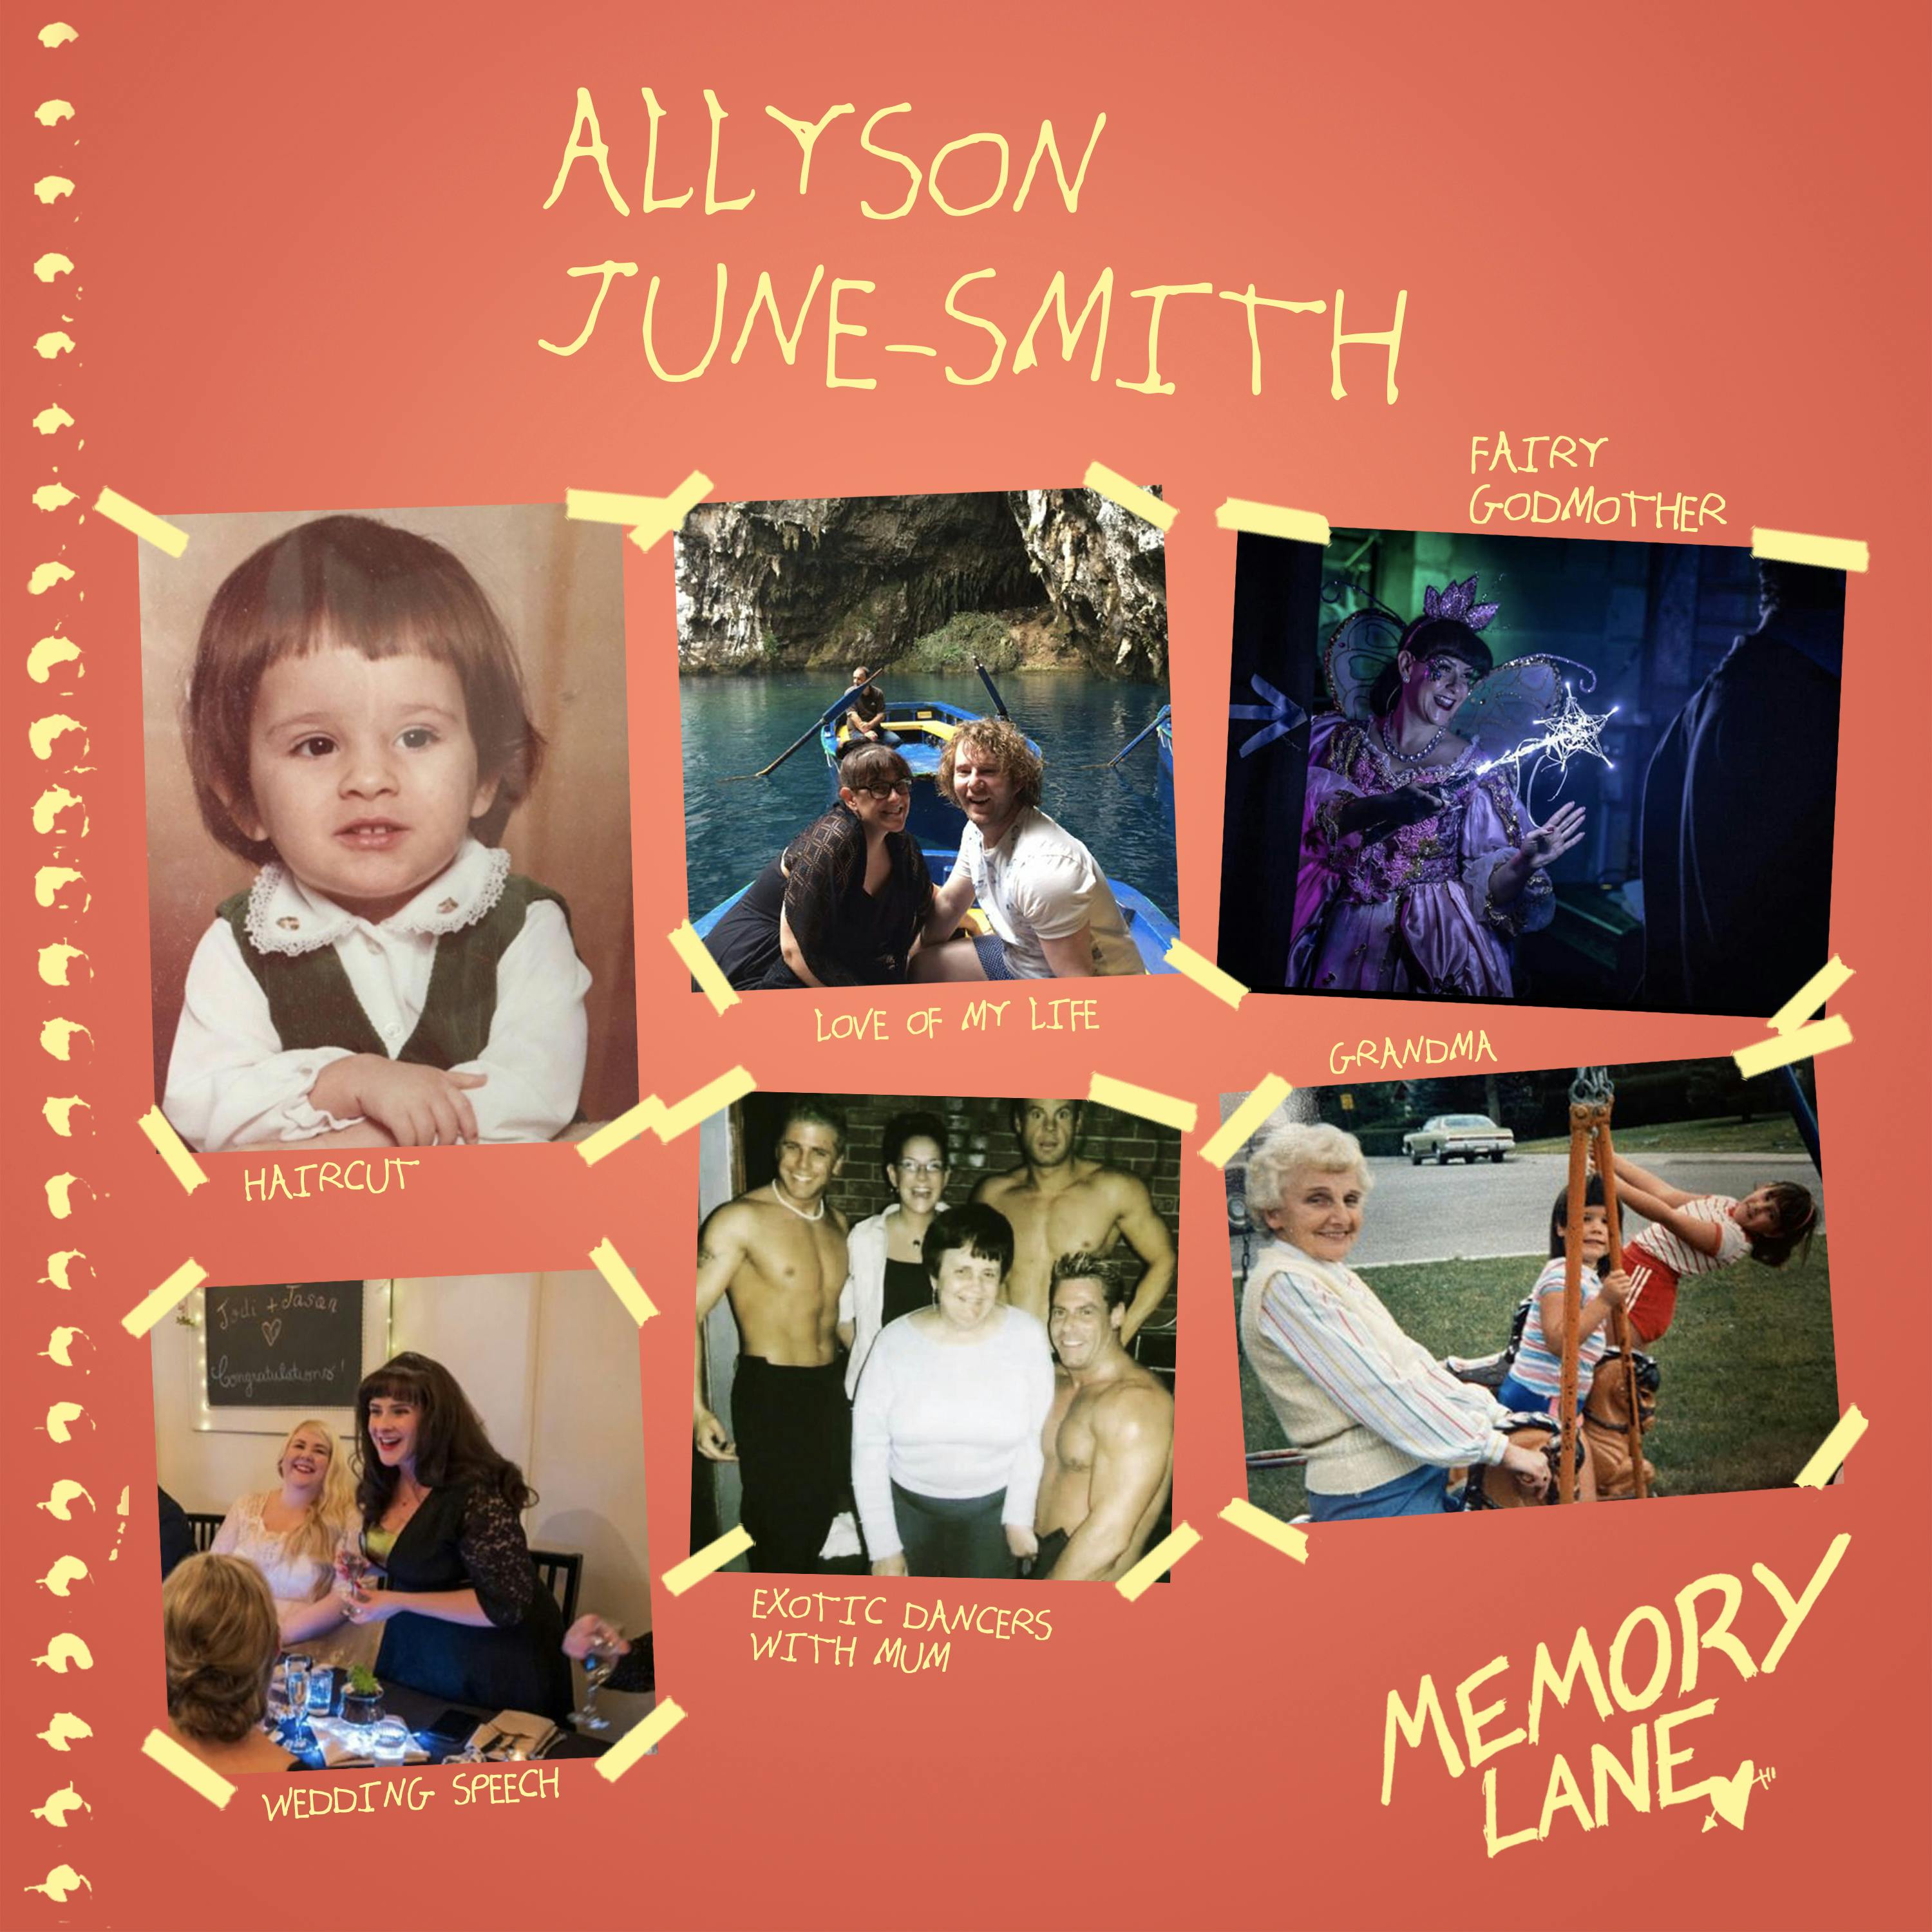 S03 E03: Allyson June-Smith